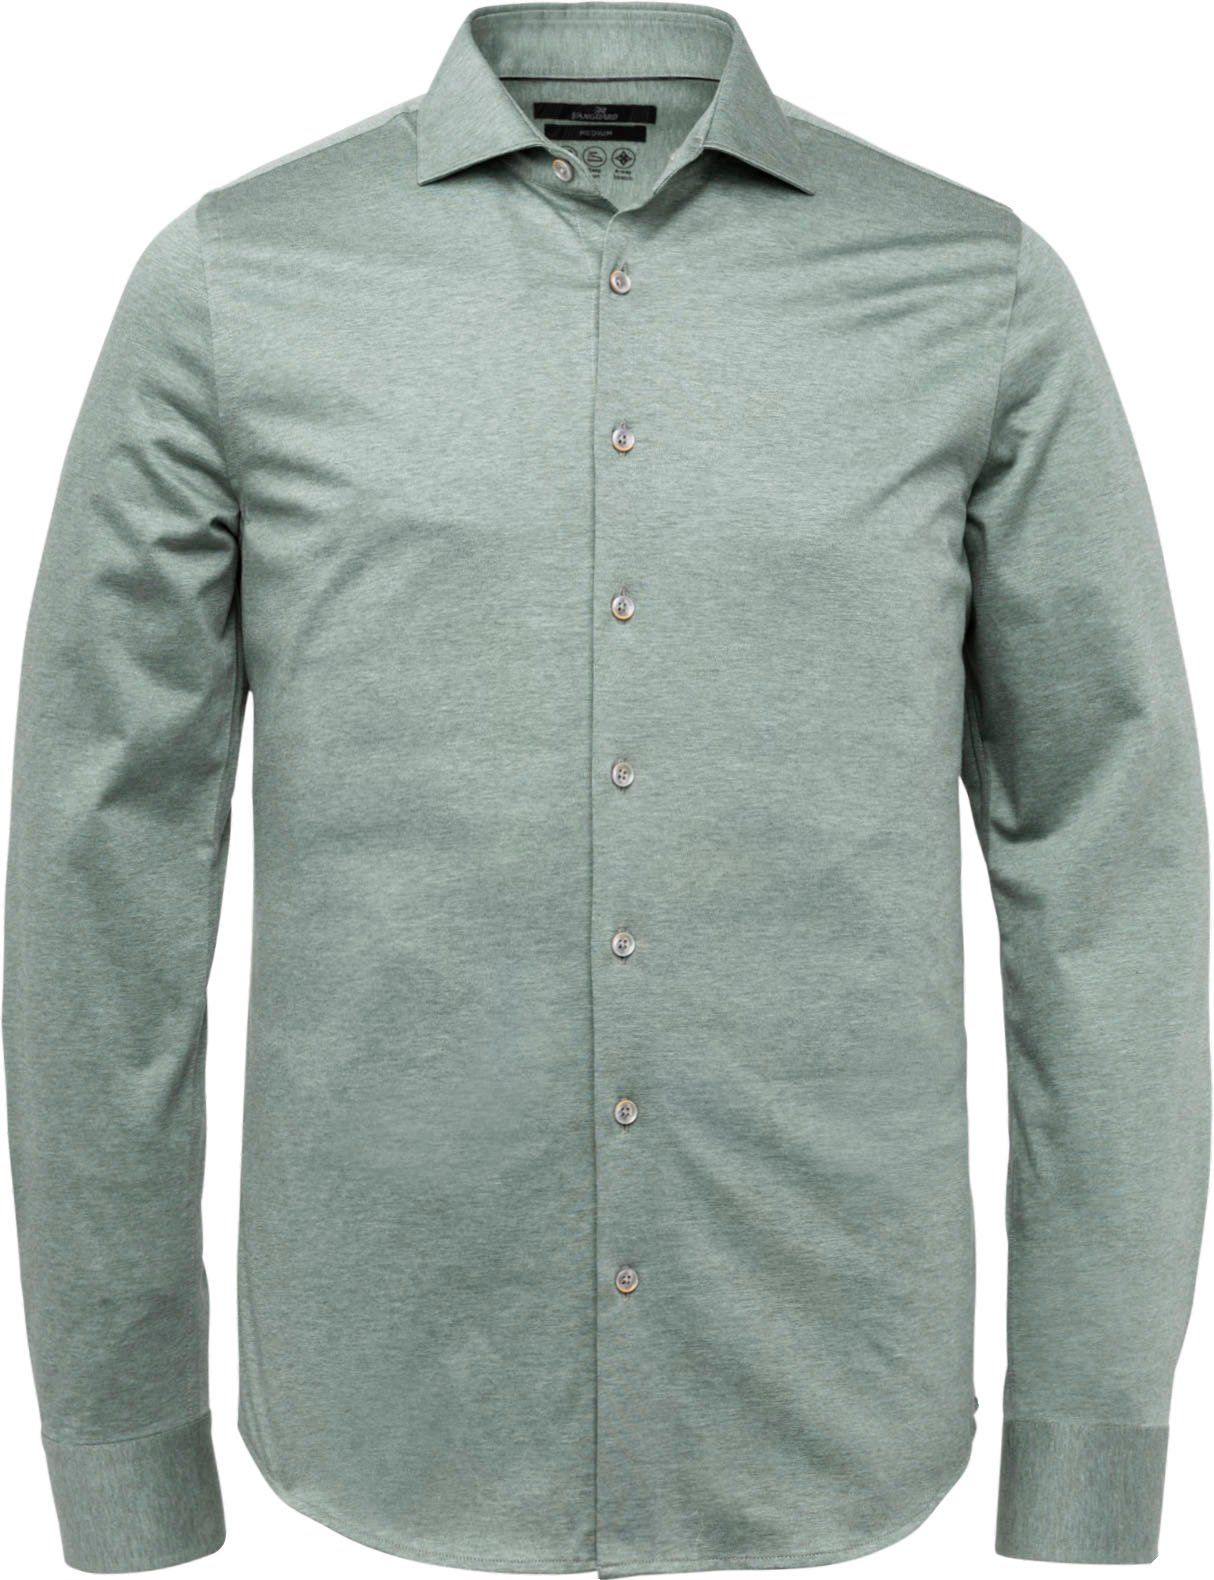 Vanguard Shirt Pique Melange Green size XL